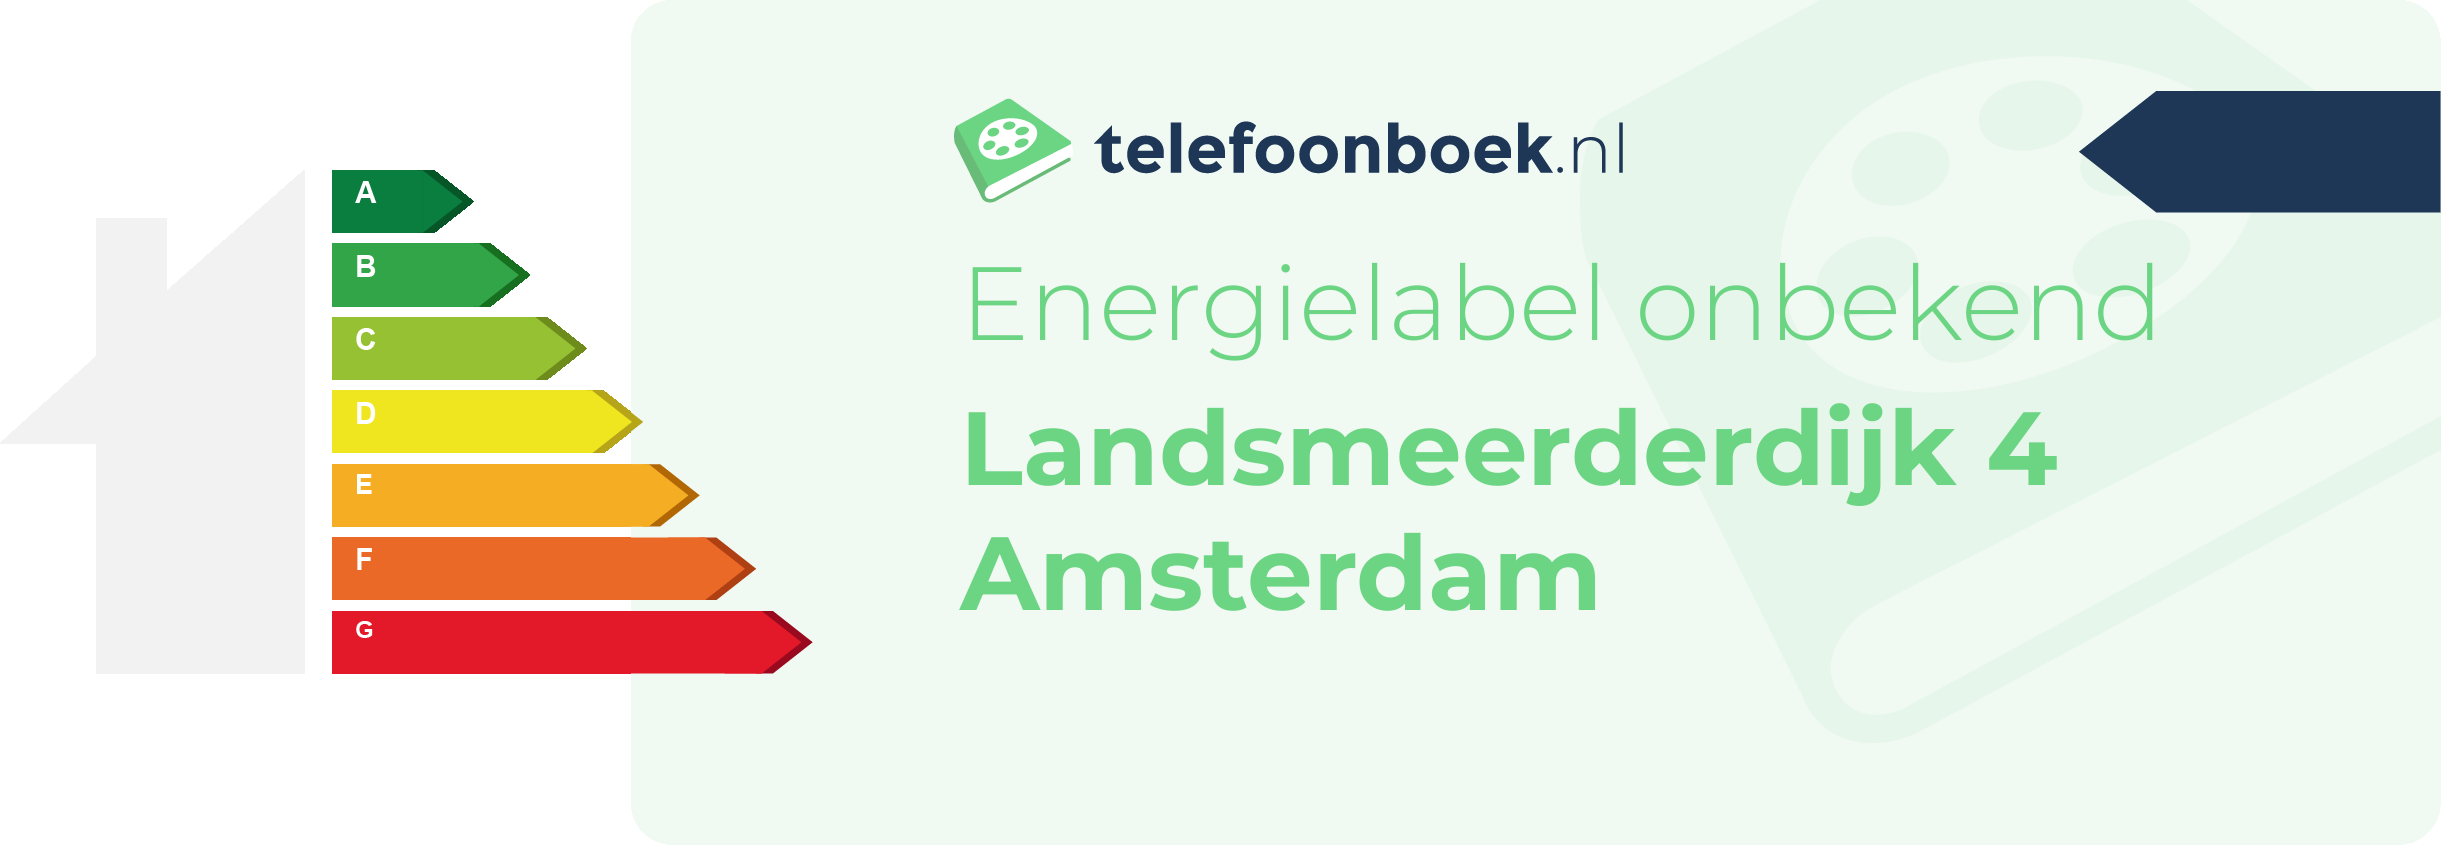 Energielabel Landsmeerderdijk 4 Amsterdam